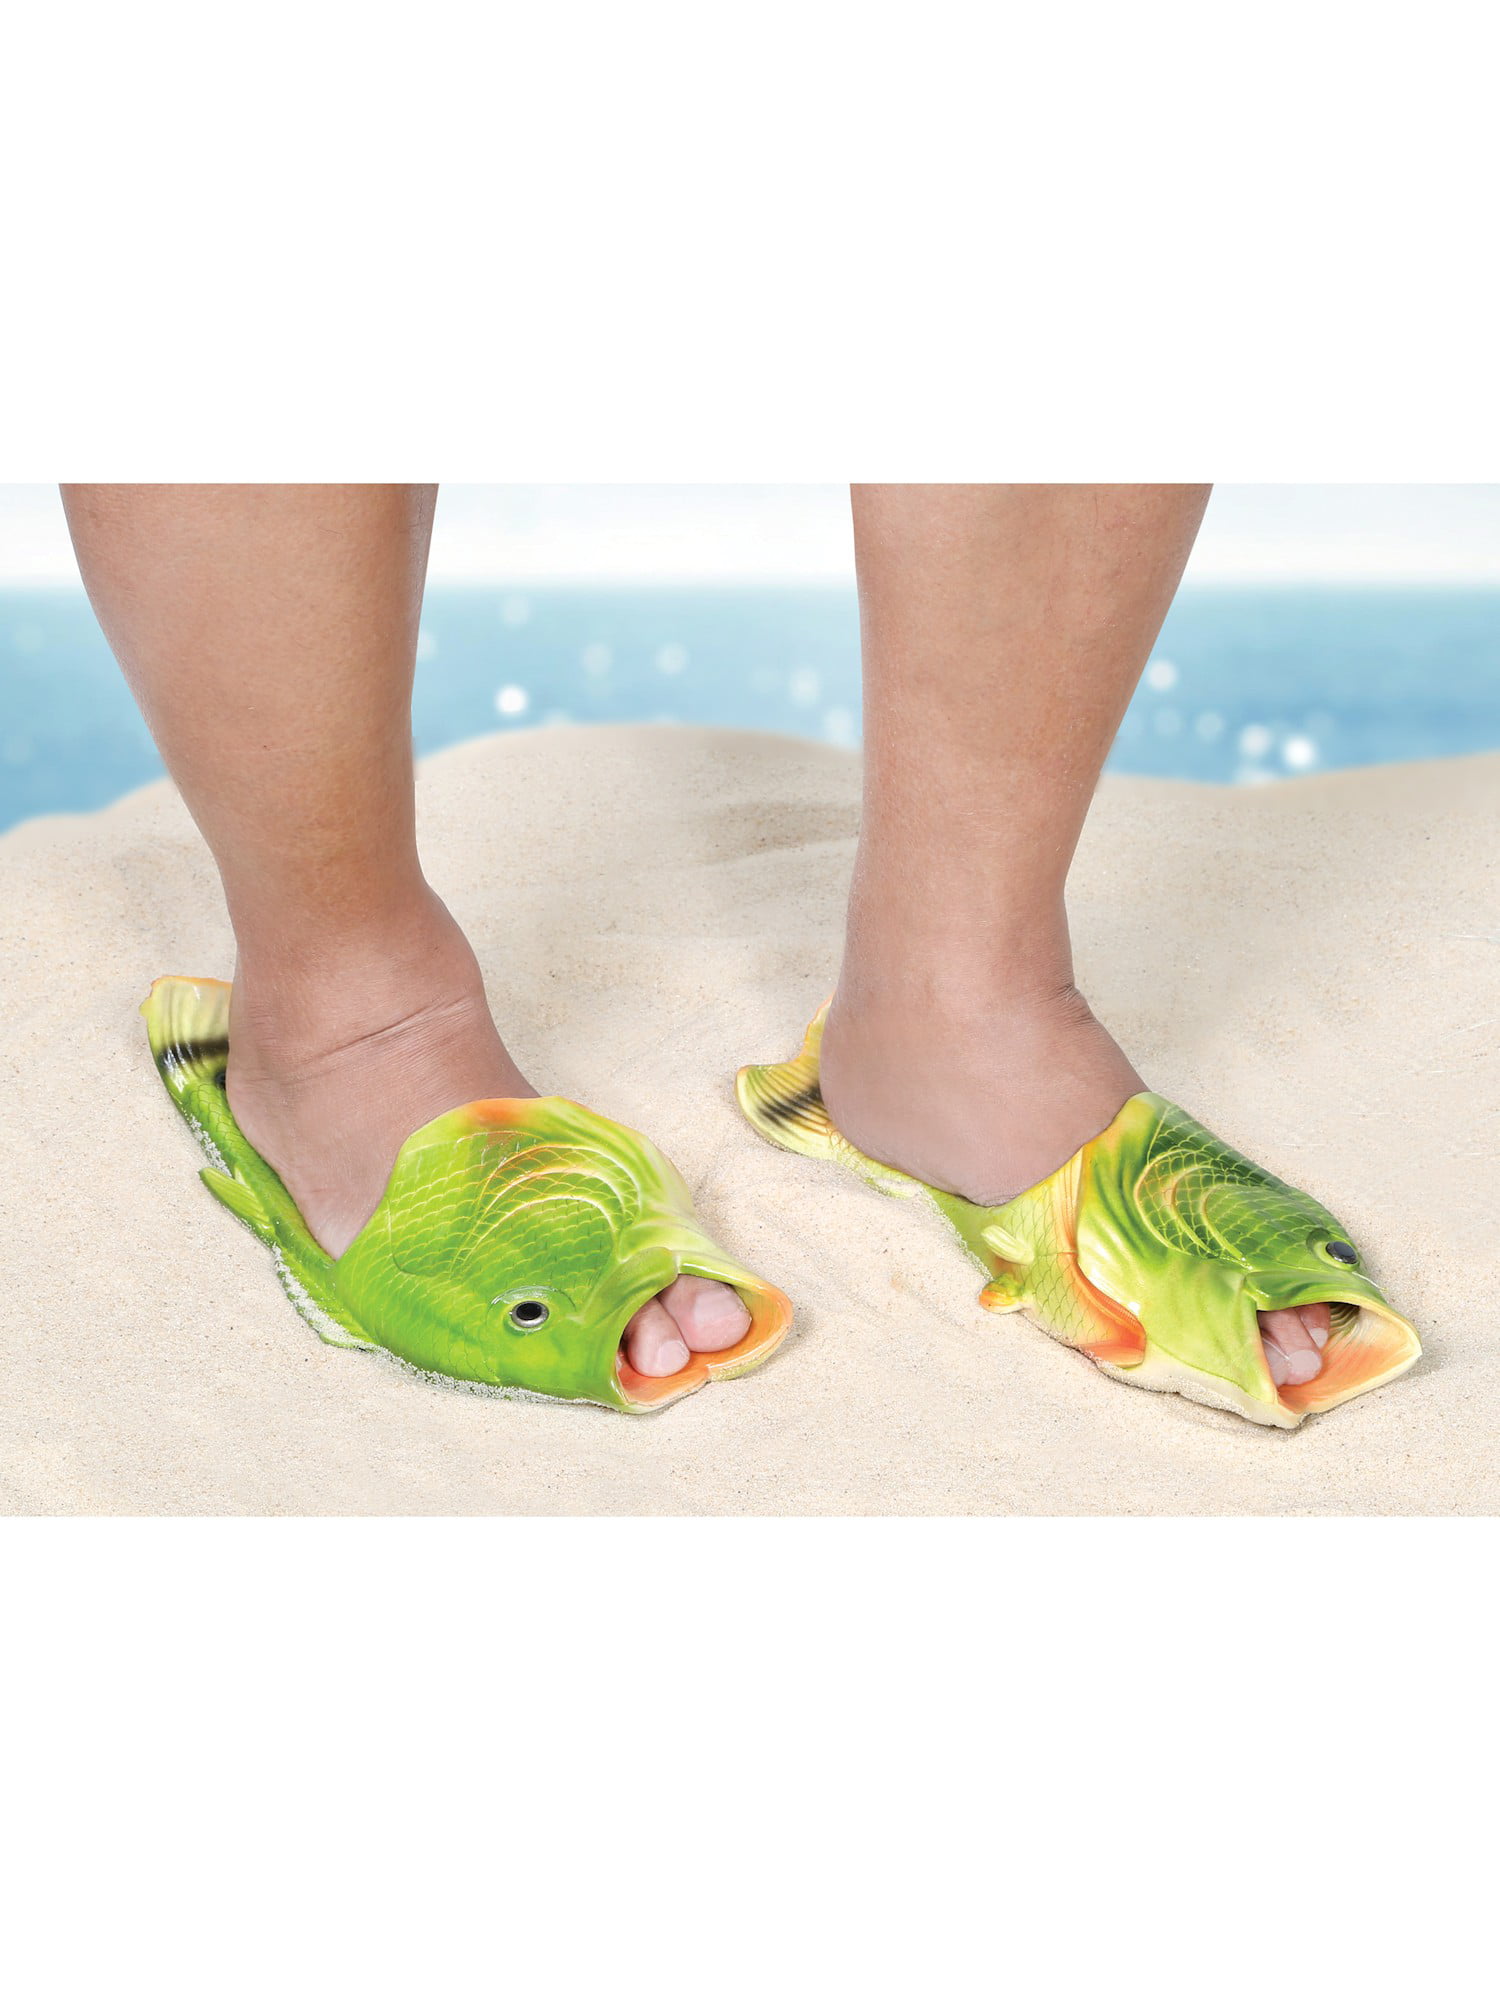 fish slippers walmart